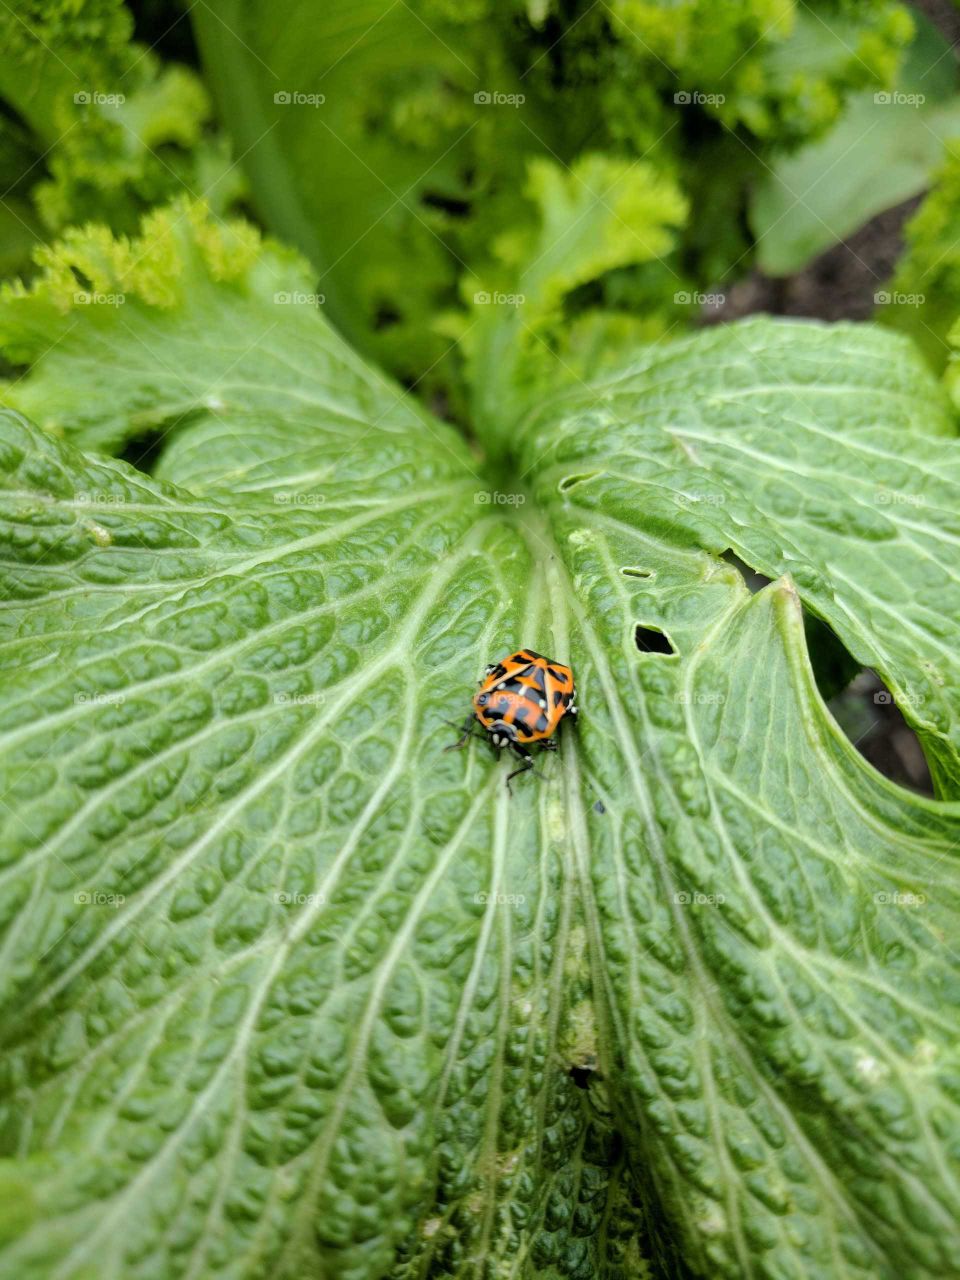 hungry bug